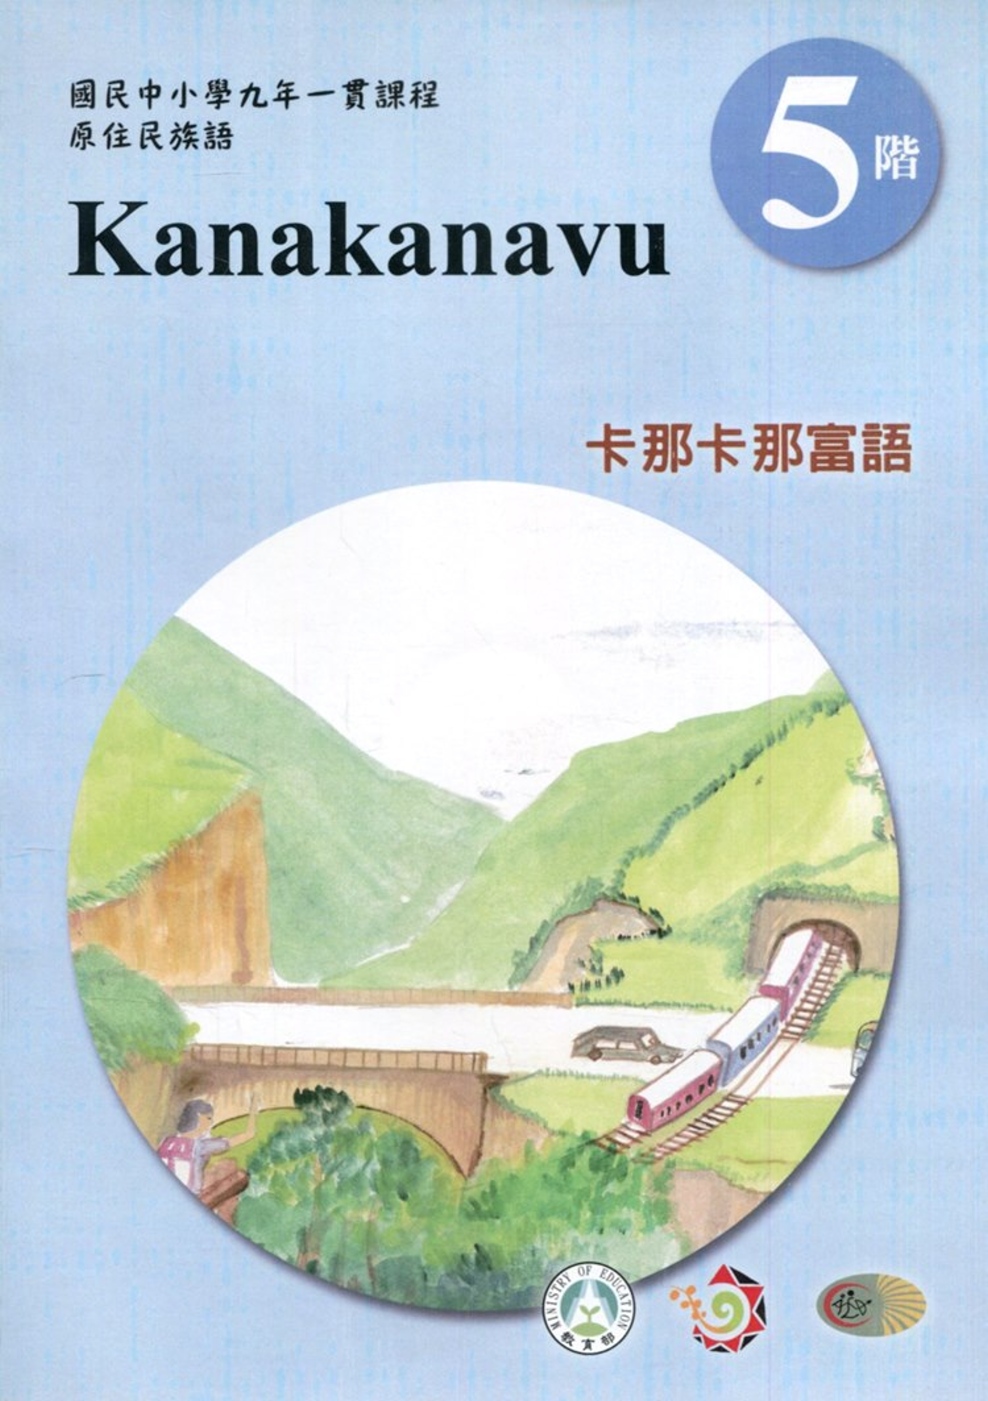 卡那卡那富語學習手冊第5階(附光碟)3版2刷